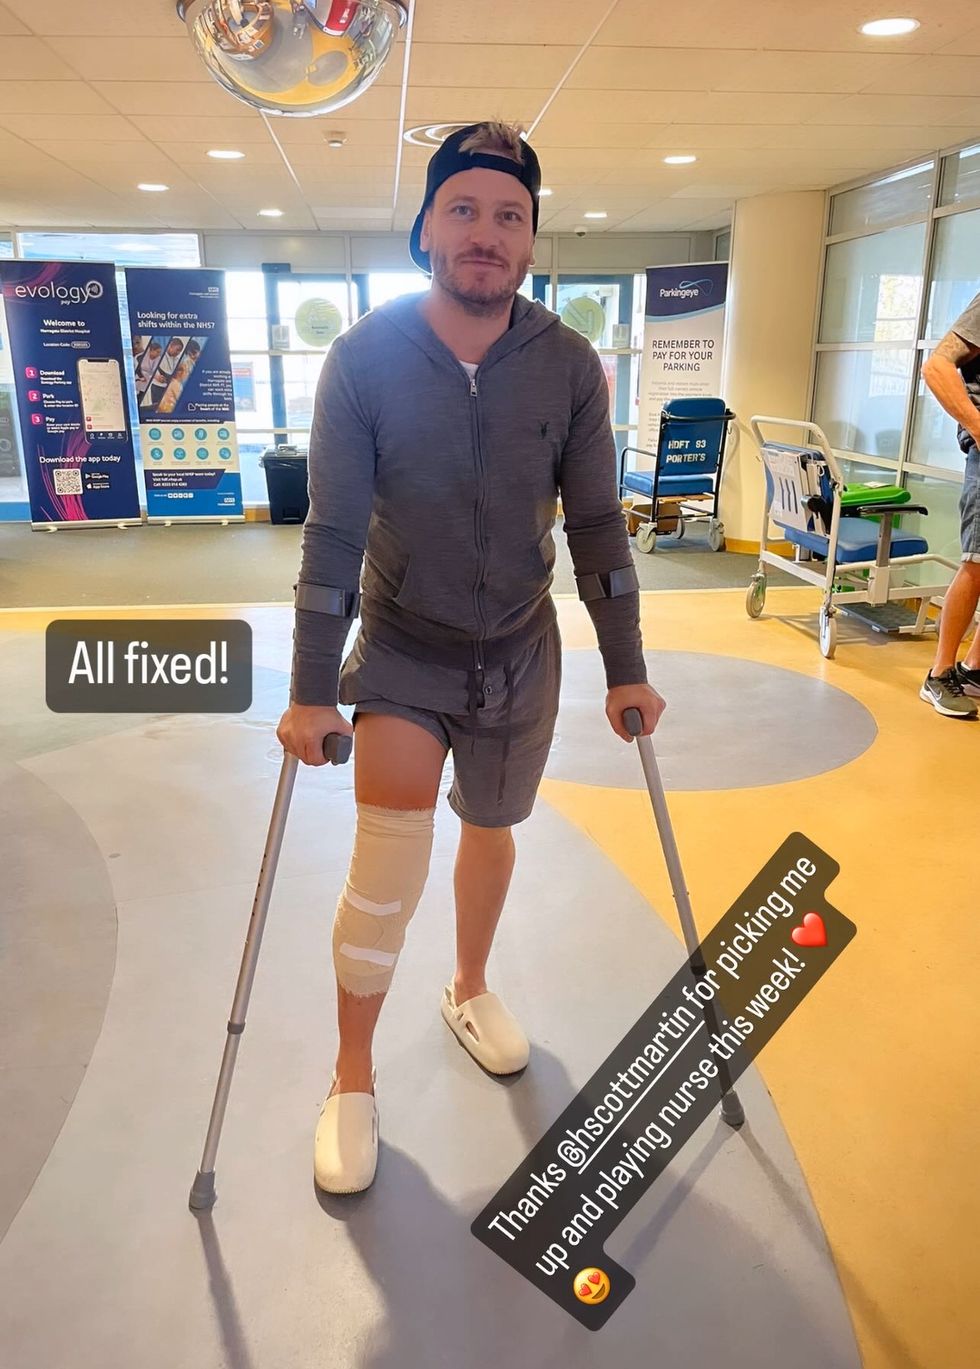 matthew wolfenden comparte actualización de instagram después de una cirugía de rodilla